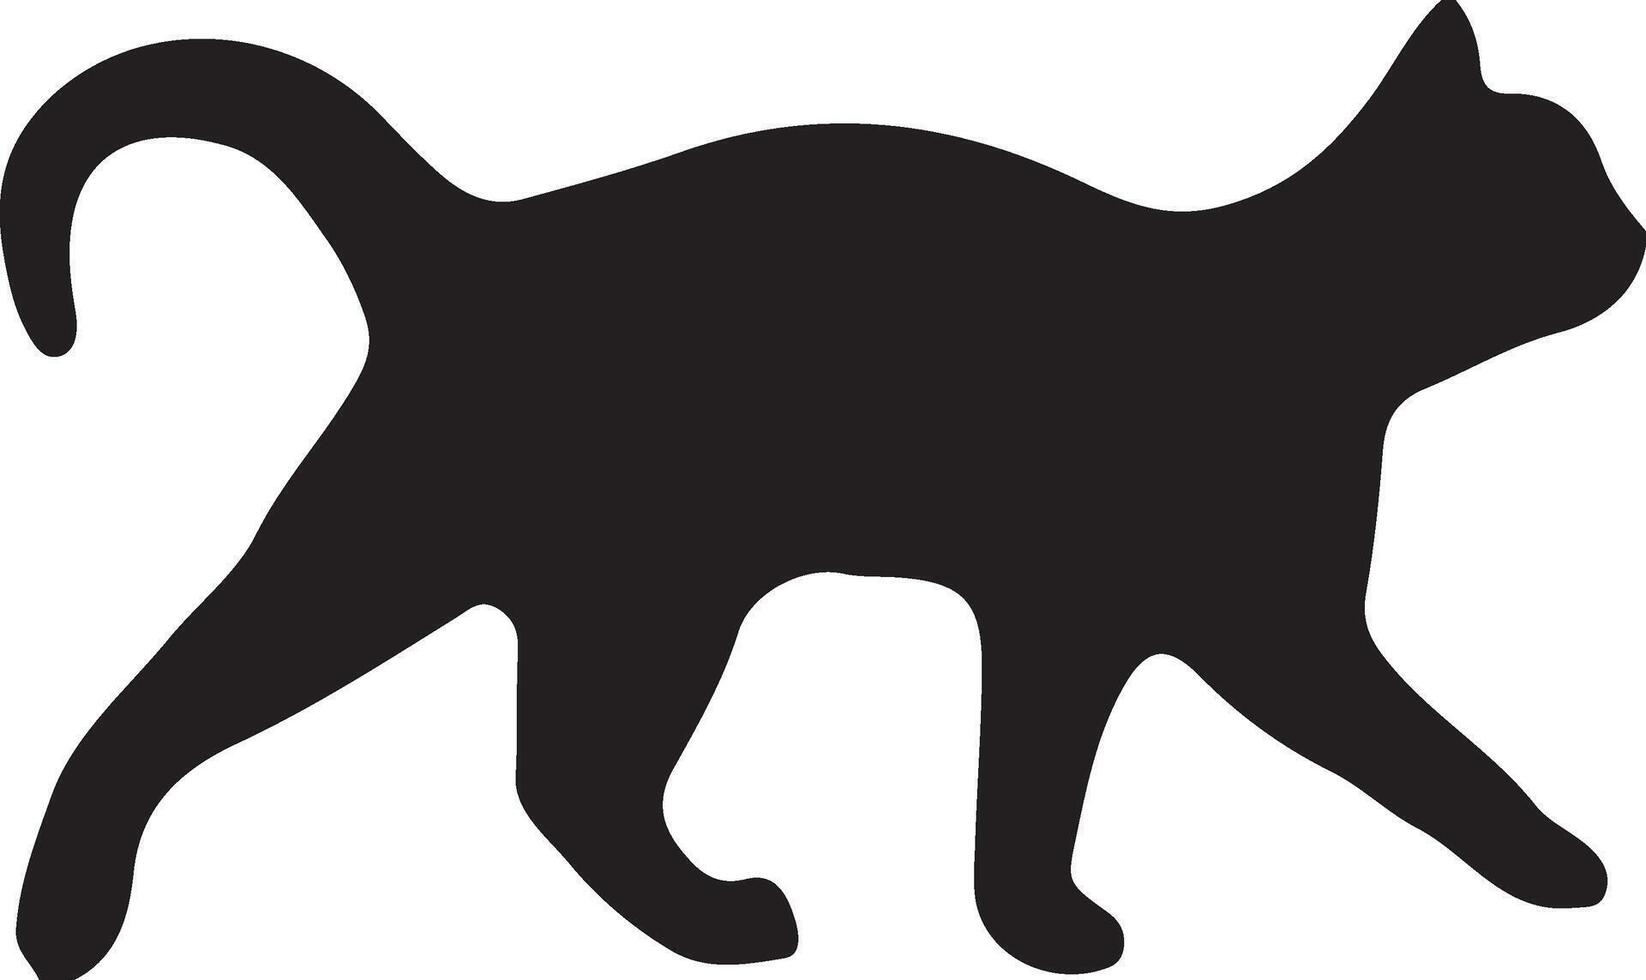 Katze-Vektor-Logo-Design. Vektor-Katze-Silhouette-Ansichtsseite für Retro-Logos, isoliert auf weißem Hintergrund vektor